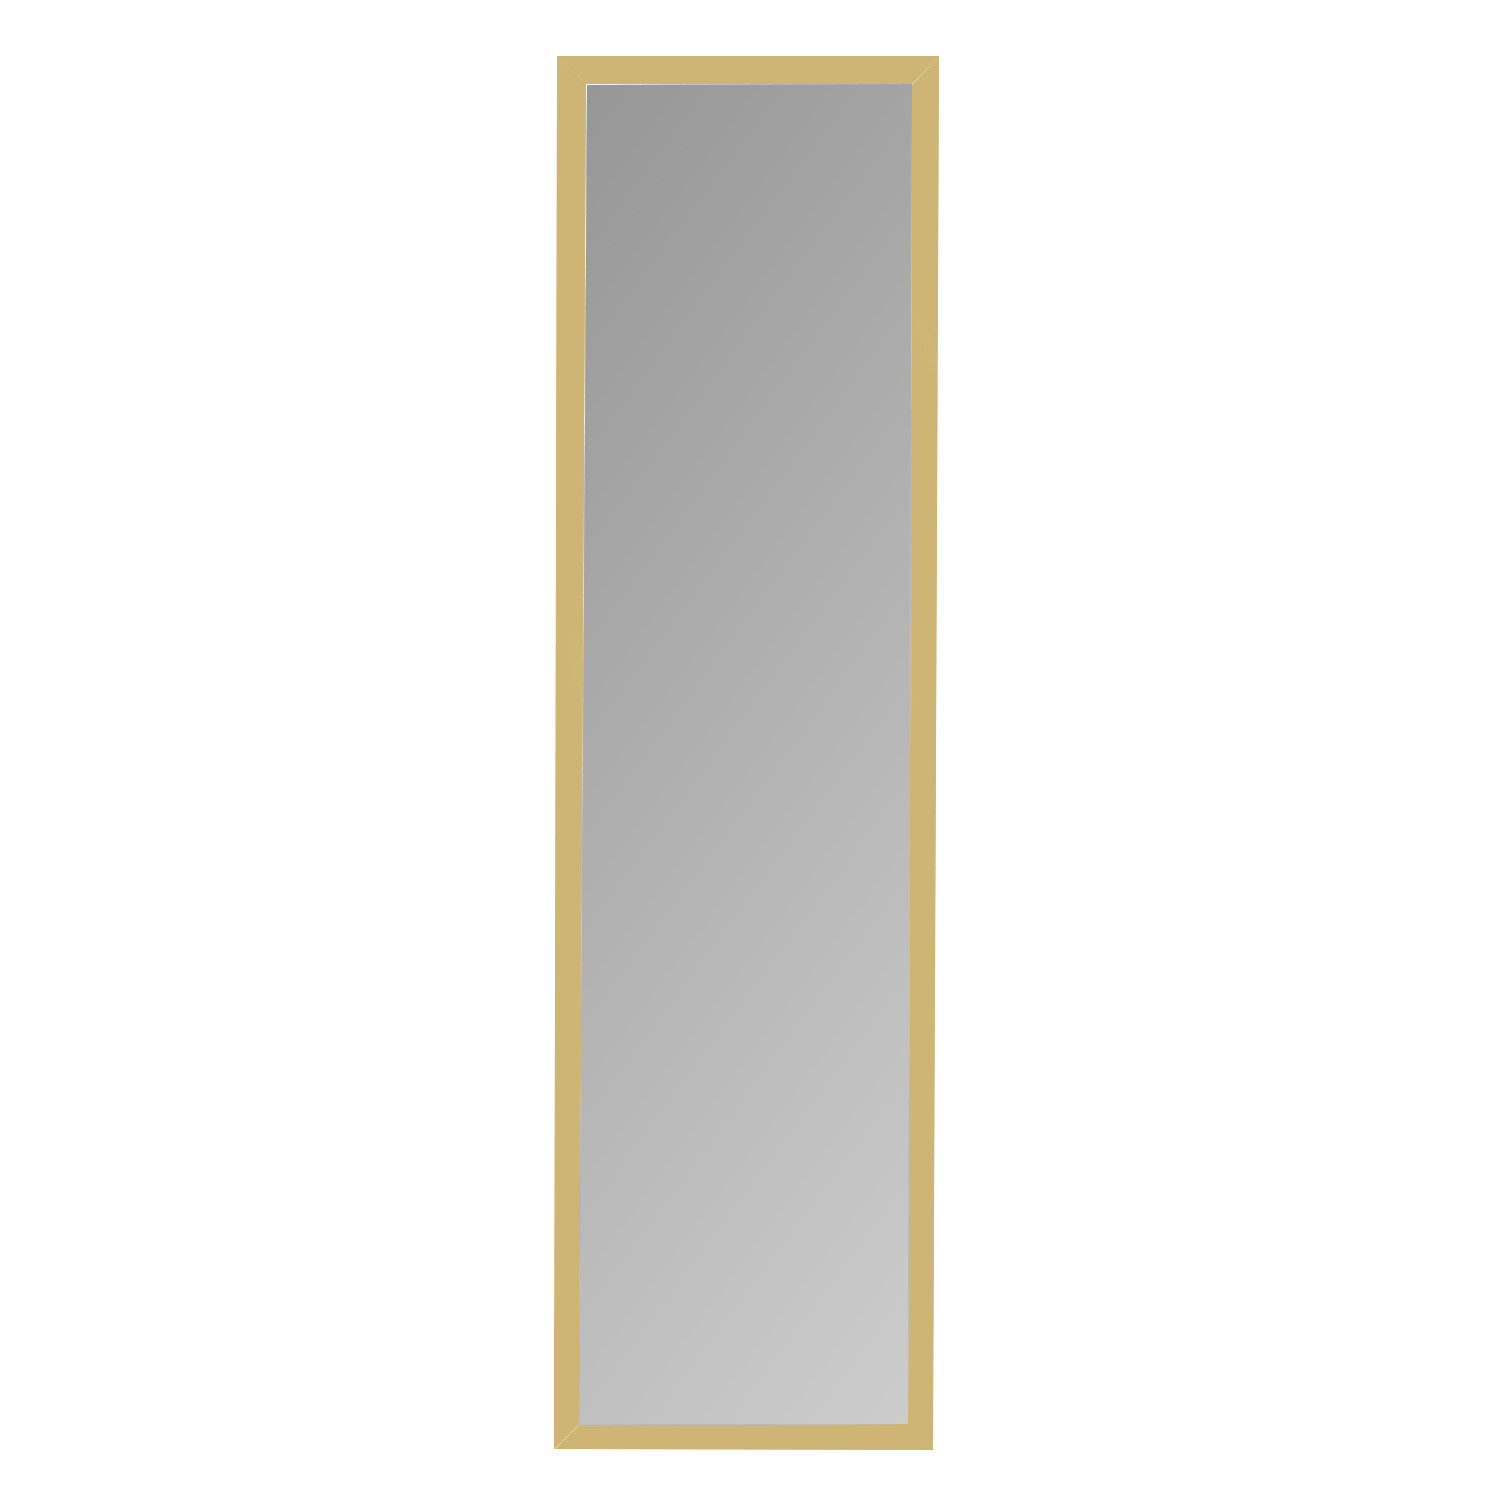 Single Metallic Over Door Mirror 123.8 x 33.8cm in Assorted styles Image 1